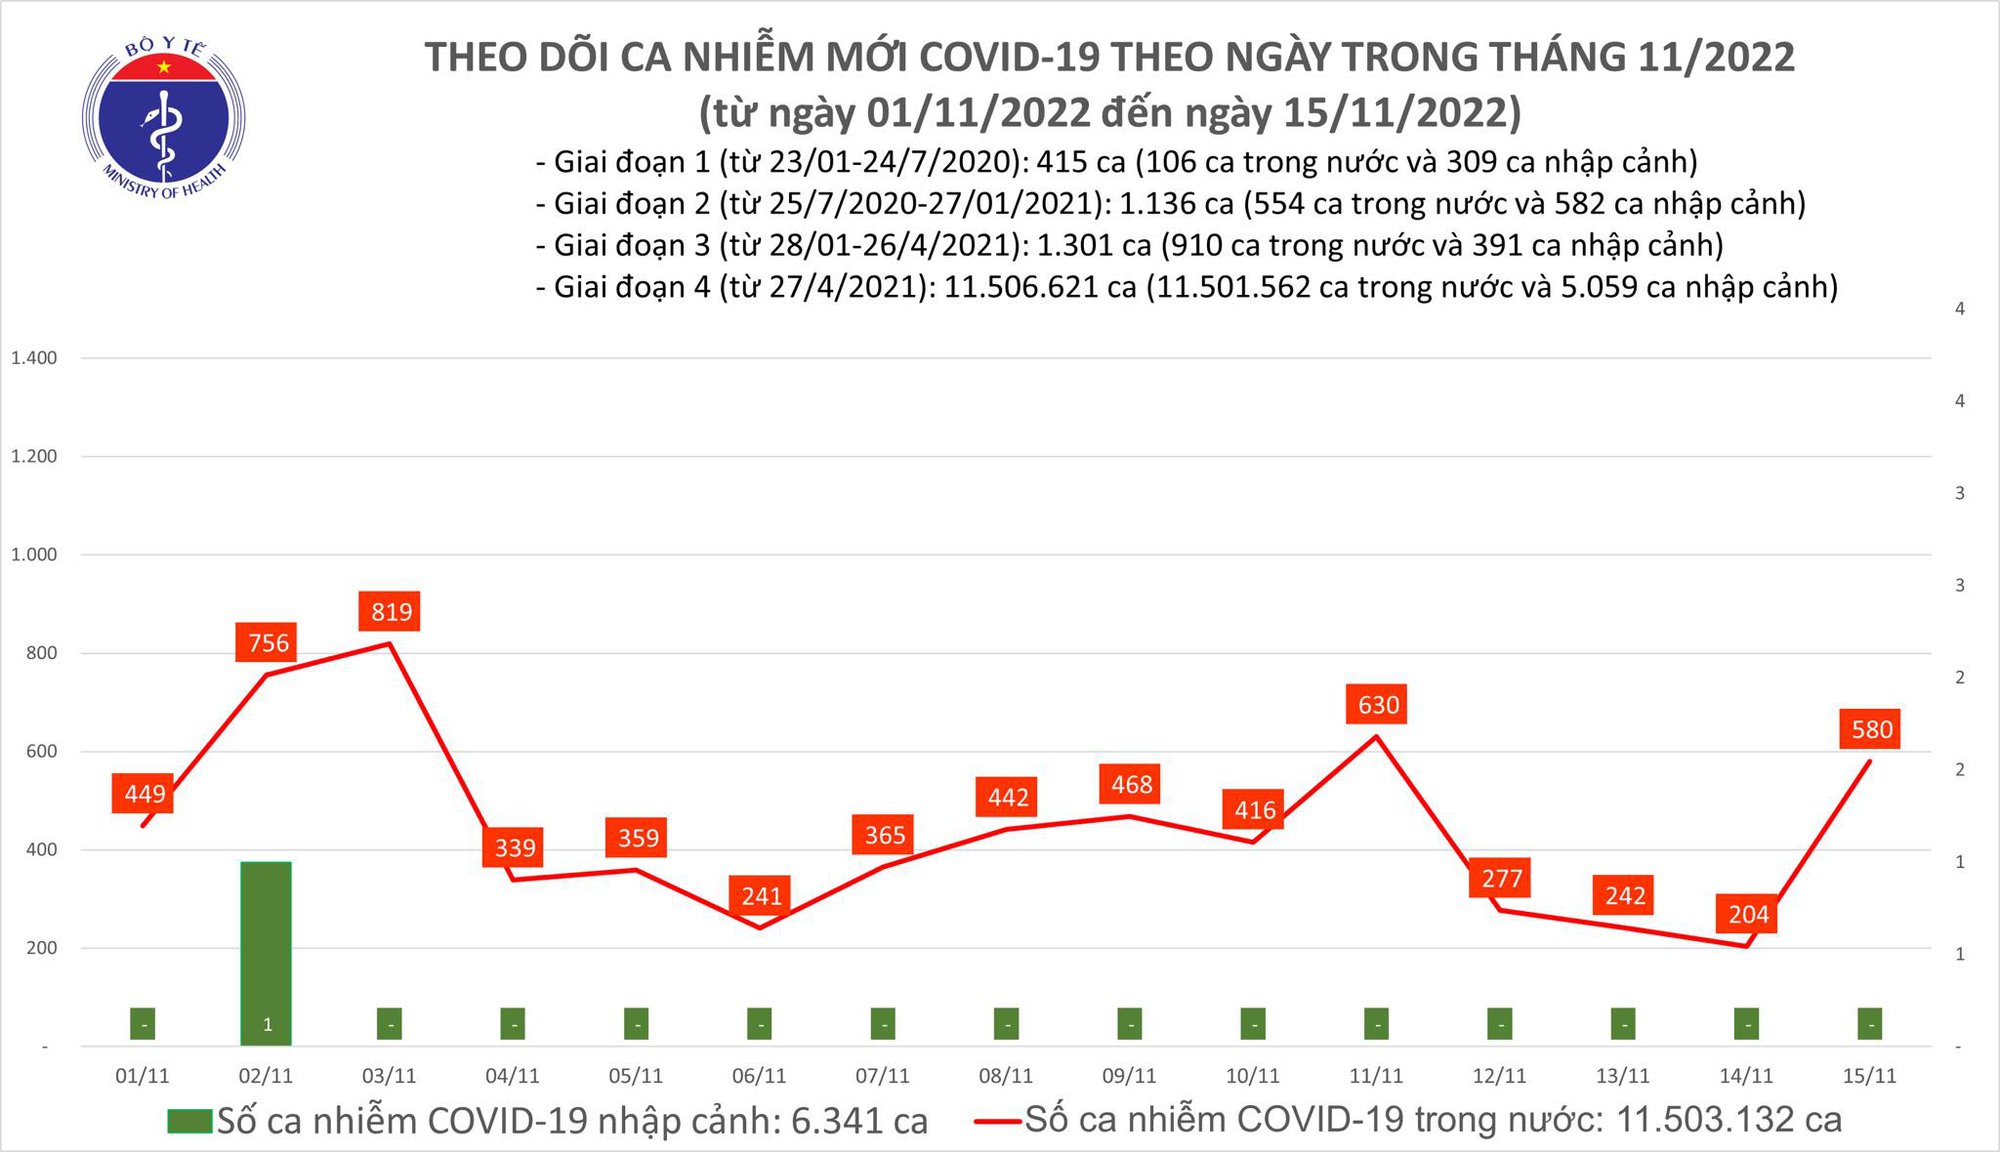 Ngày 15/11: Ca COVID-19 tăng vọt lên 580, gấp gần 3 lần hôm qua - Ảnh 1.